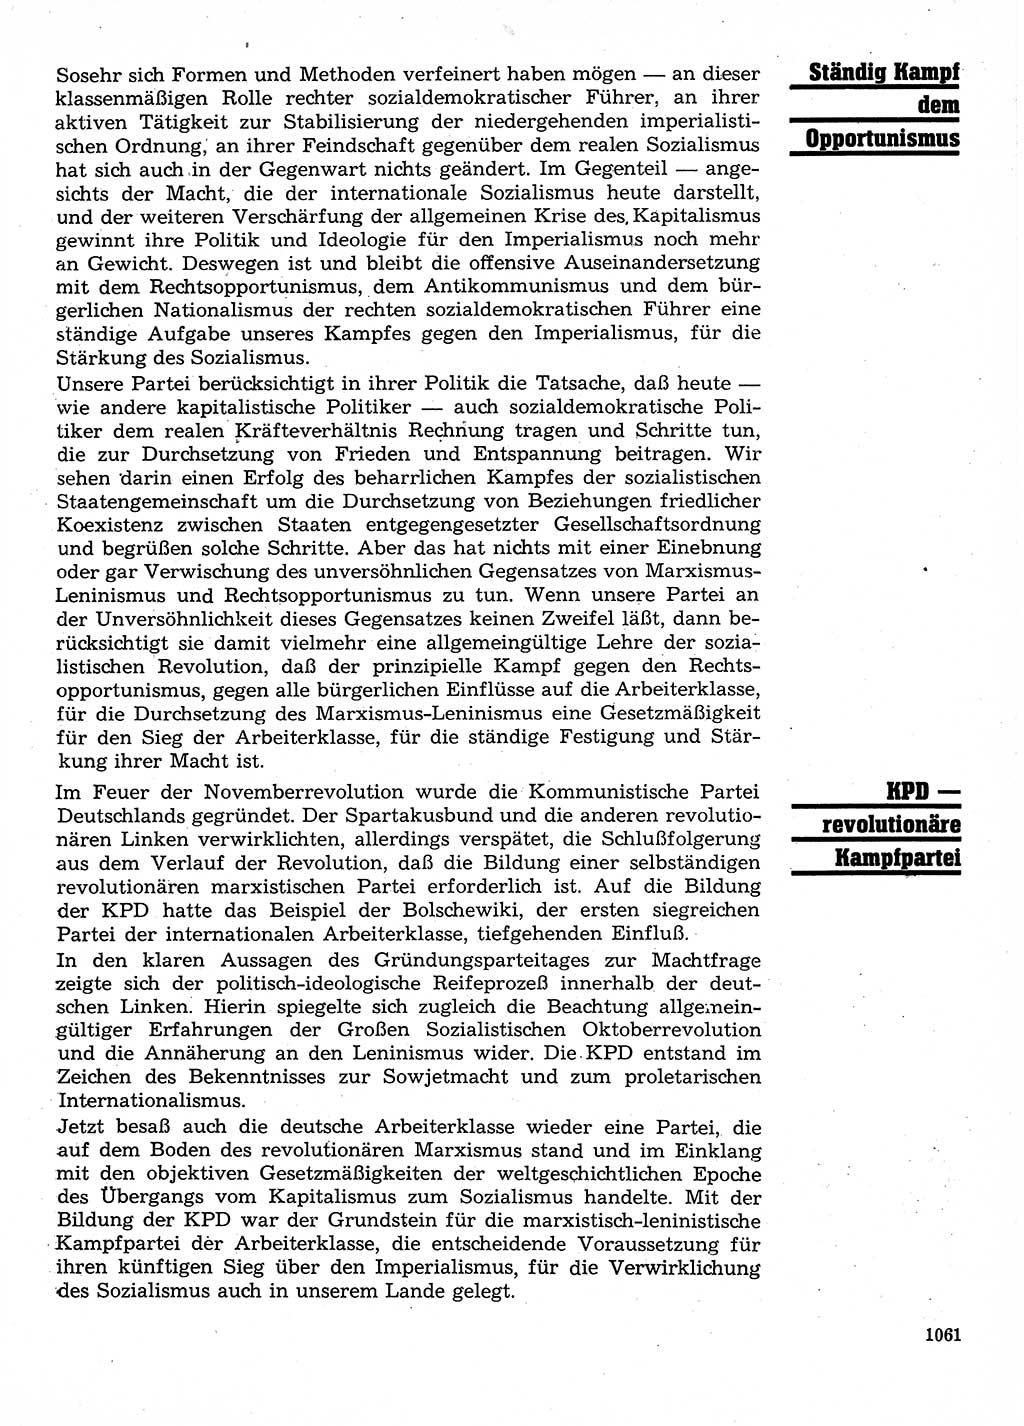 Neuer Weg (NW), Organ des Zentralkomitees (ZK) der SED (Sozialistische Einheitspartei Deutschlands) für Fragen des Parteilebens, 28. Jahrgang [Deutsche Demokratische Republik (DDR)] 1973, Seite 1061 (NW ZK SED DDR 1973, S. 1061)